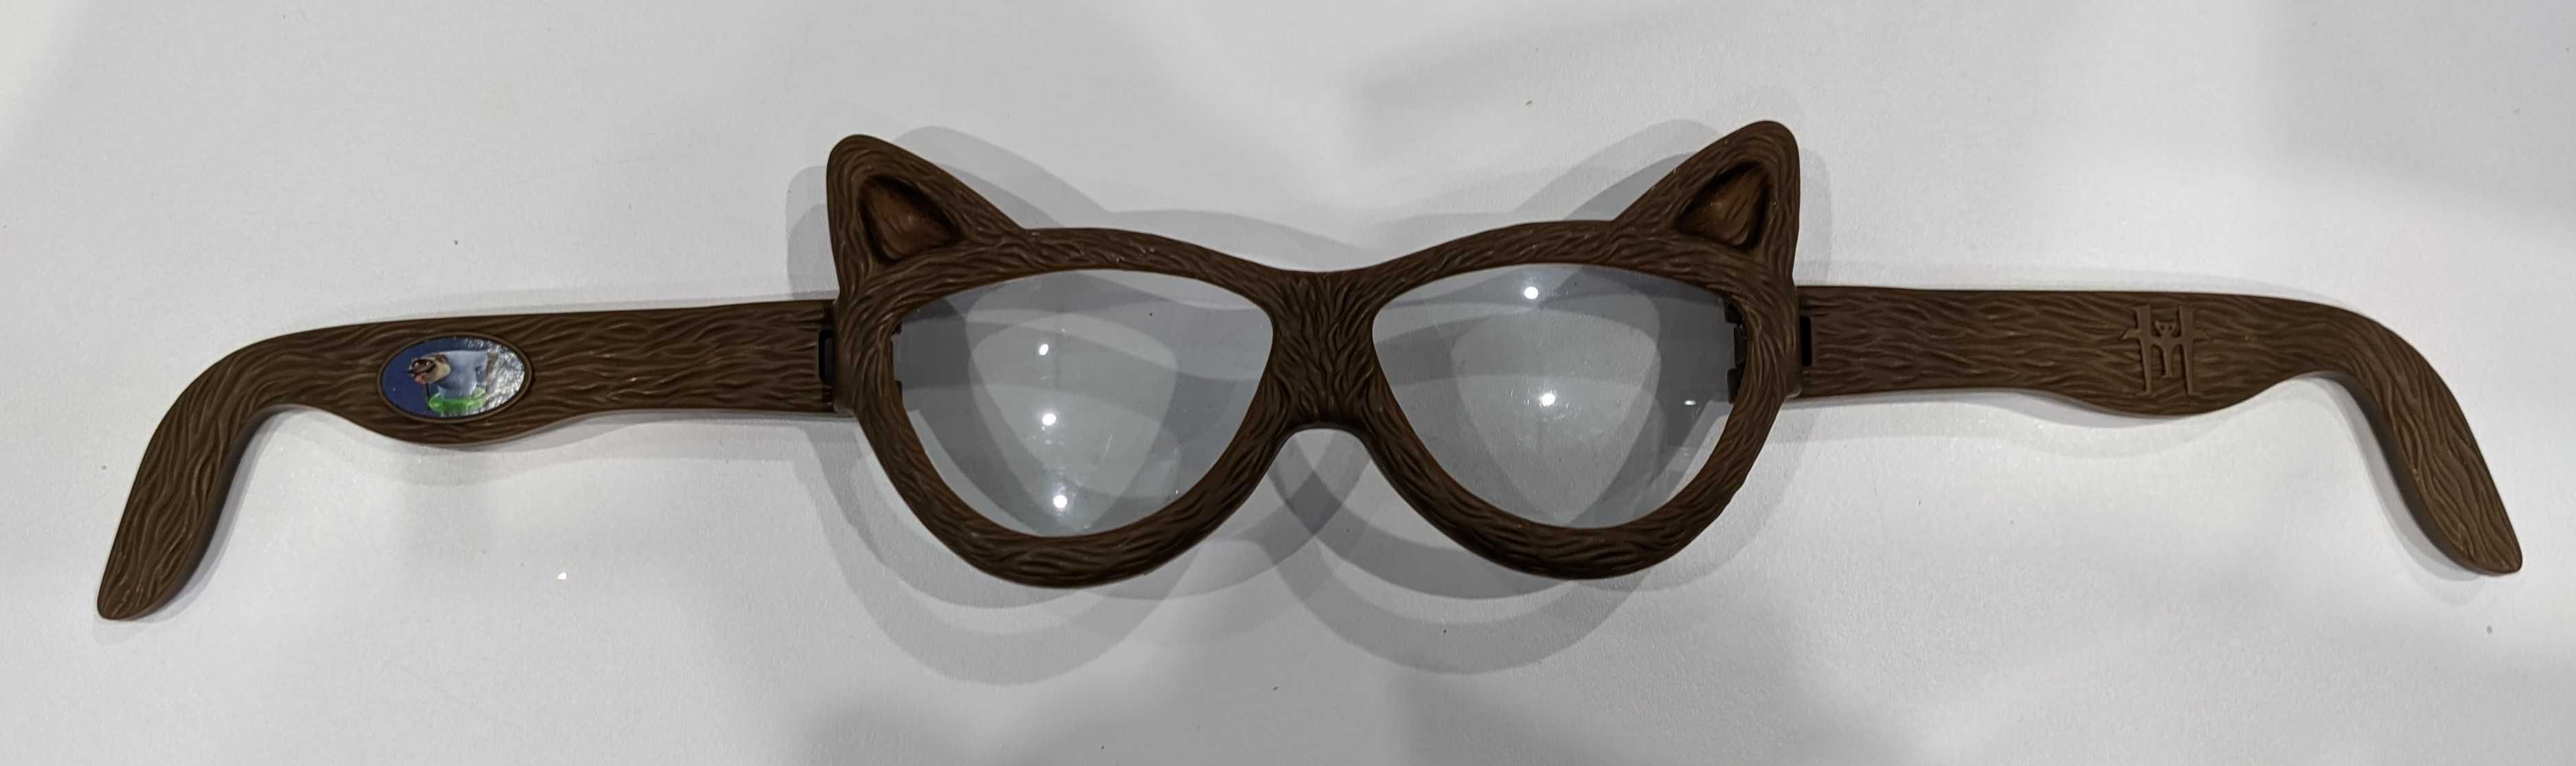 Симпатичные детские очки в виде кошечки, размер универсальный